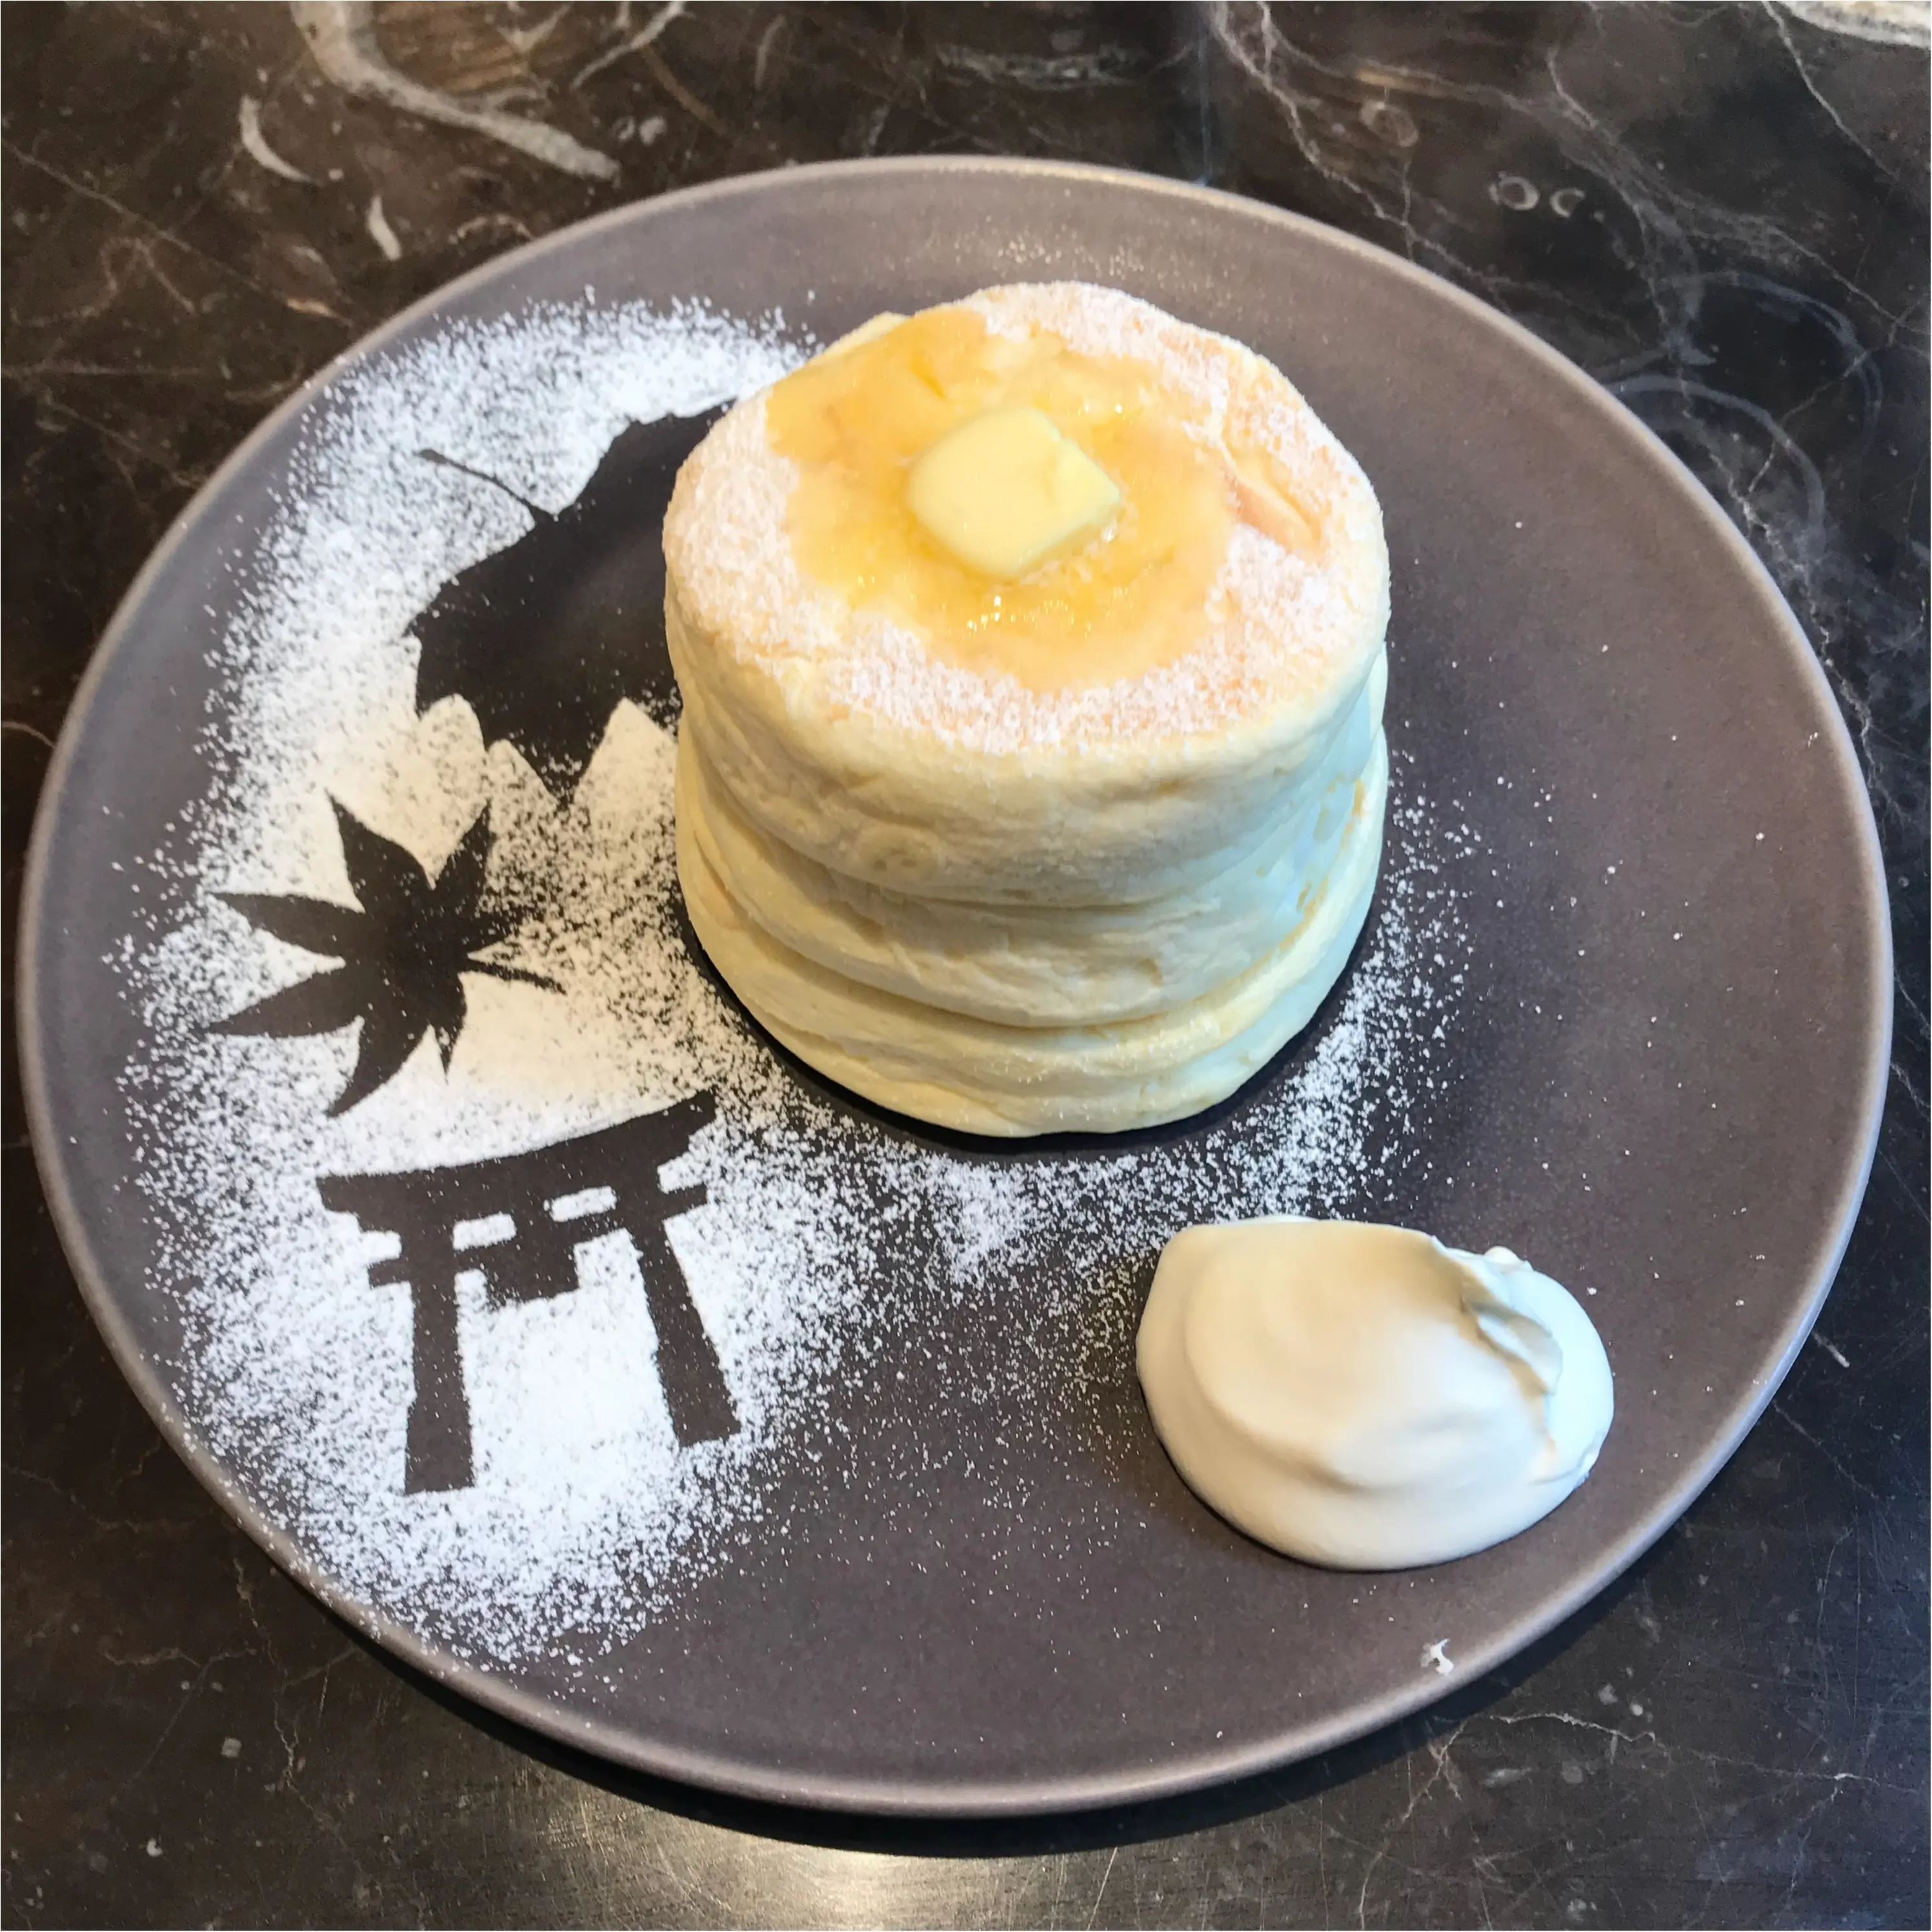 京都 秋の風情を感じながらふわふわのパンケーキ Moreインフルエンサーズブログ Daily More